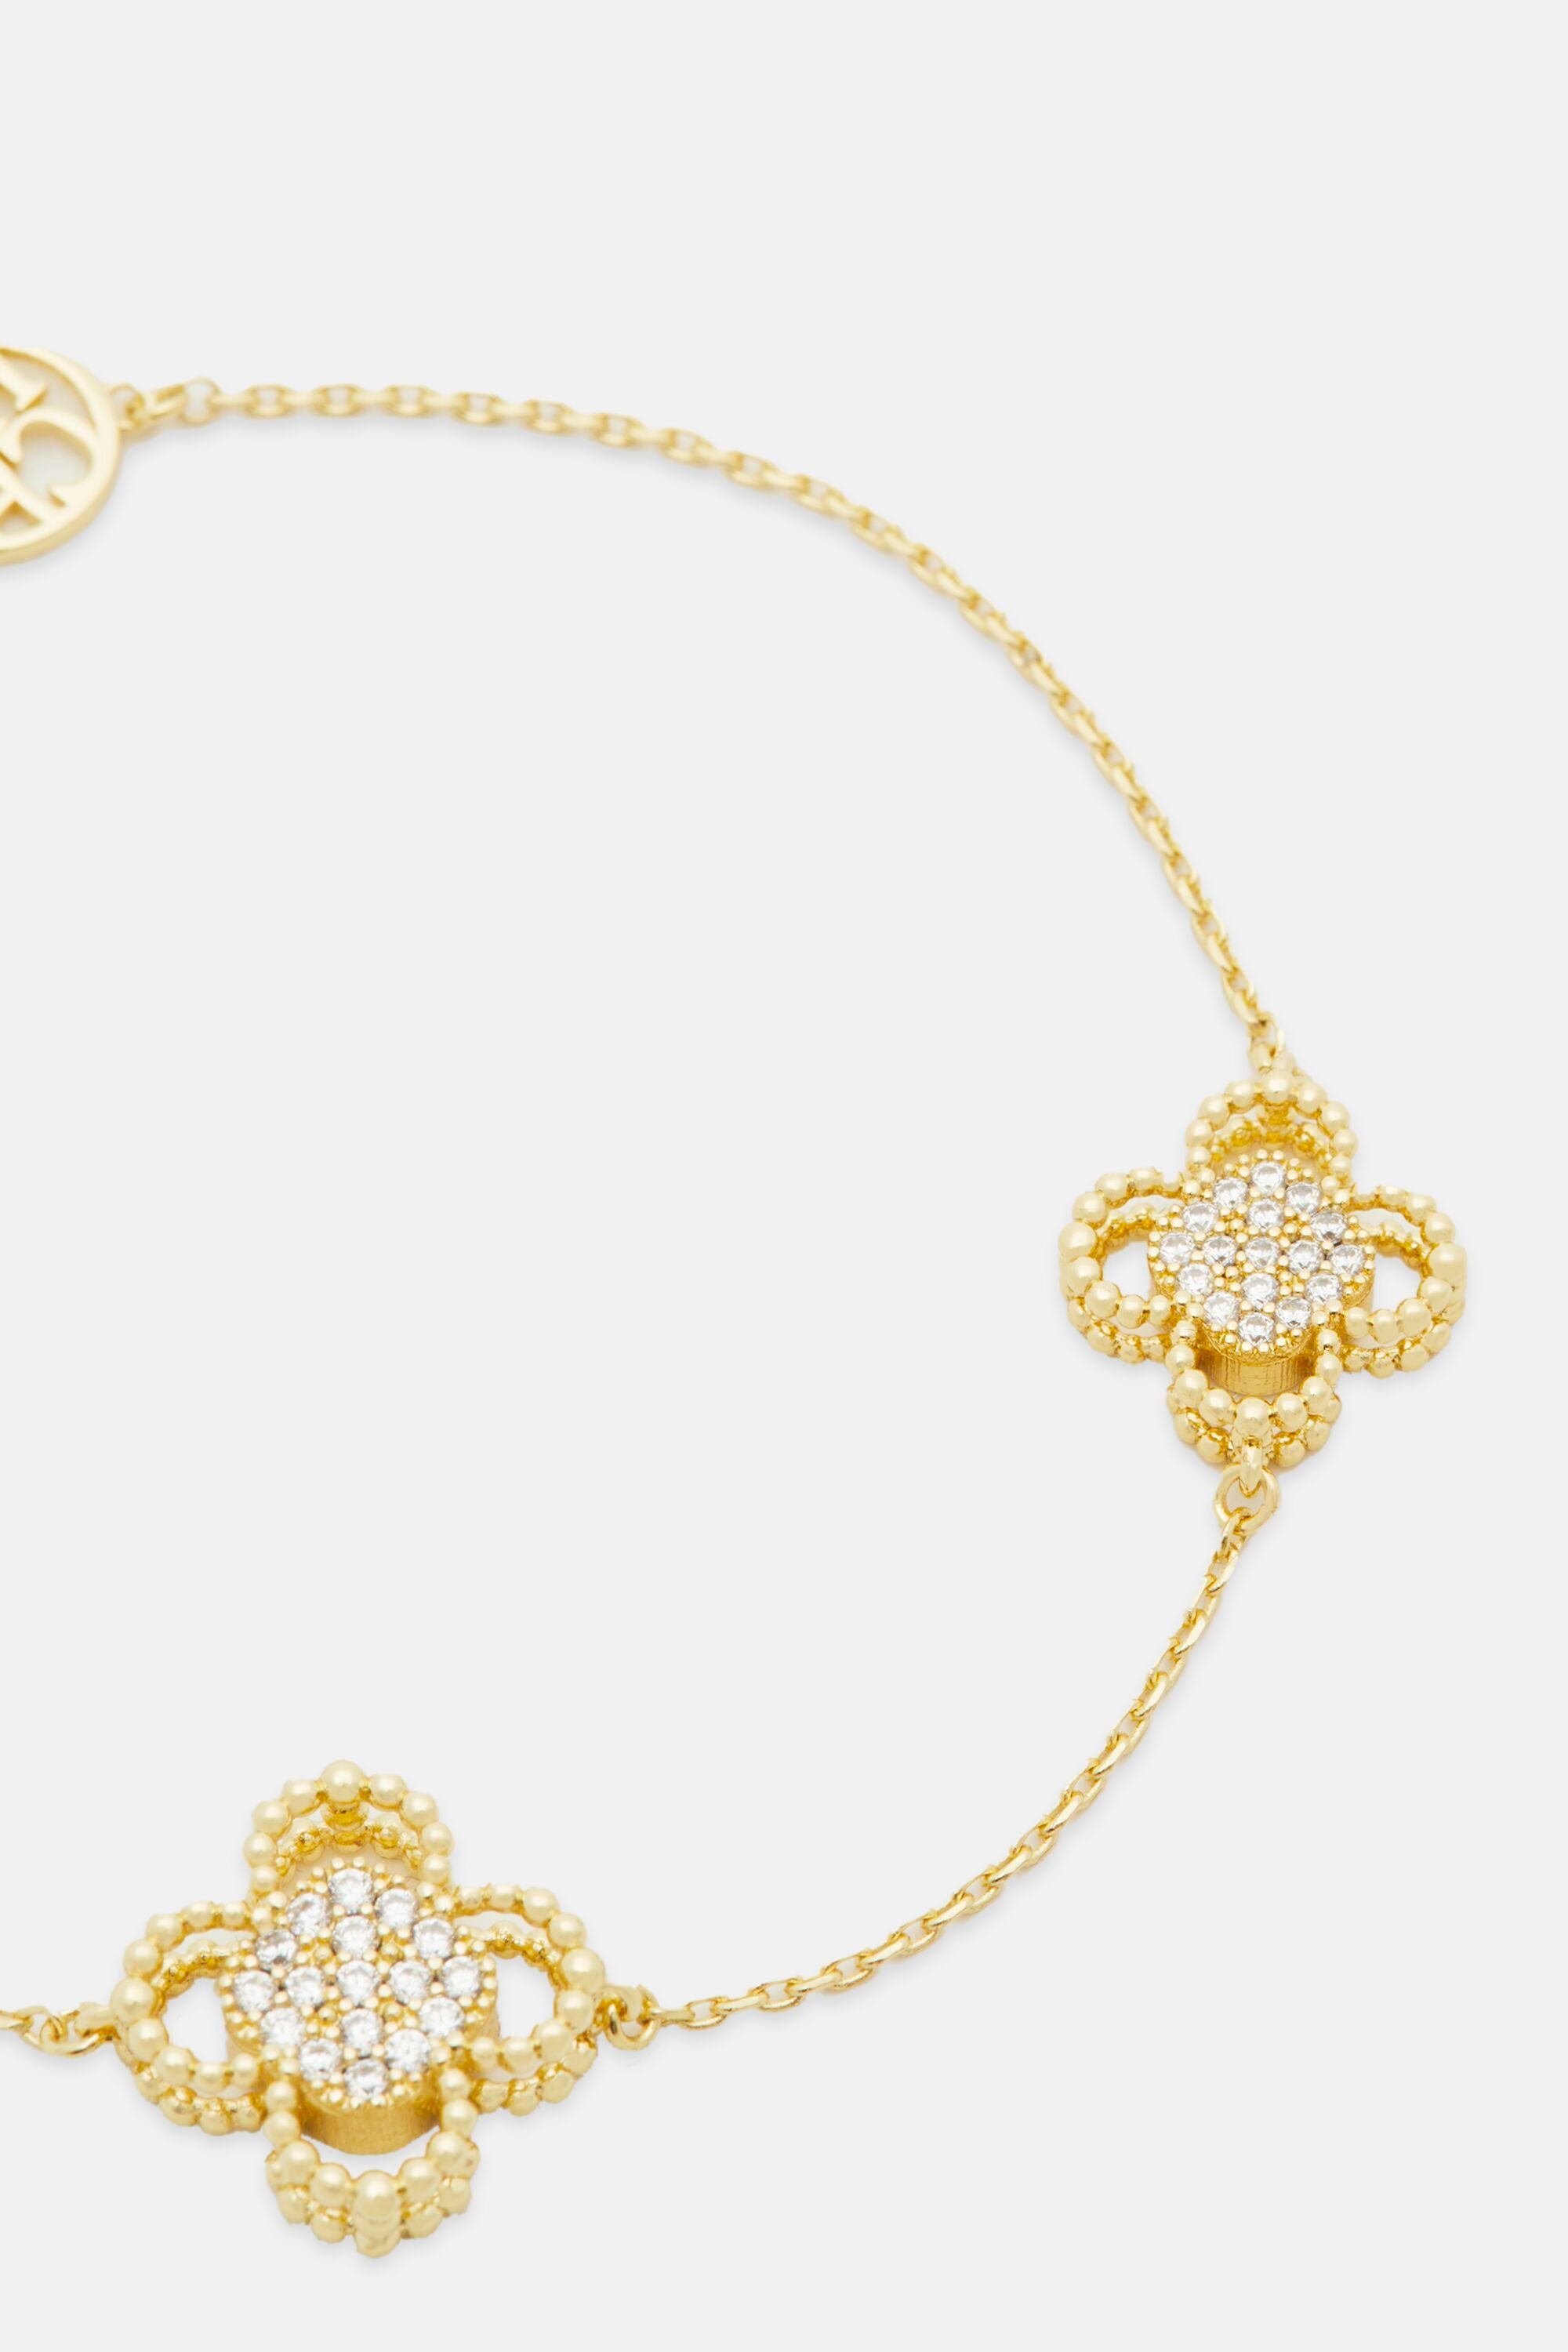 Carolina Herrera Vintage Gold/Gemstone Bracelet Adjustable. Excellent  condition! | eBay